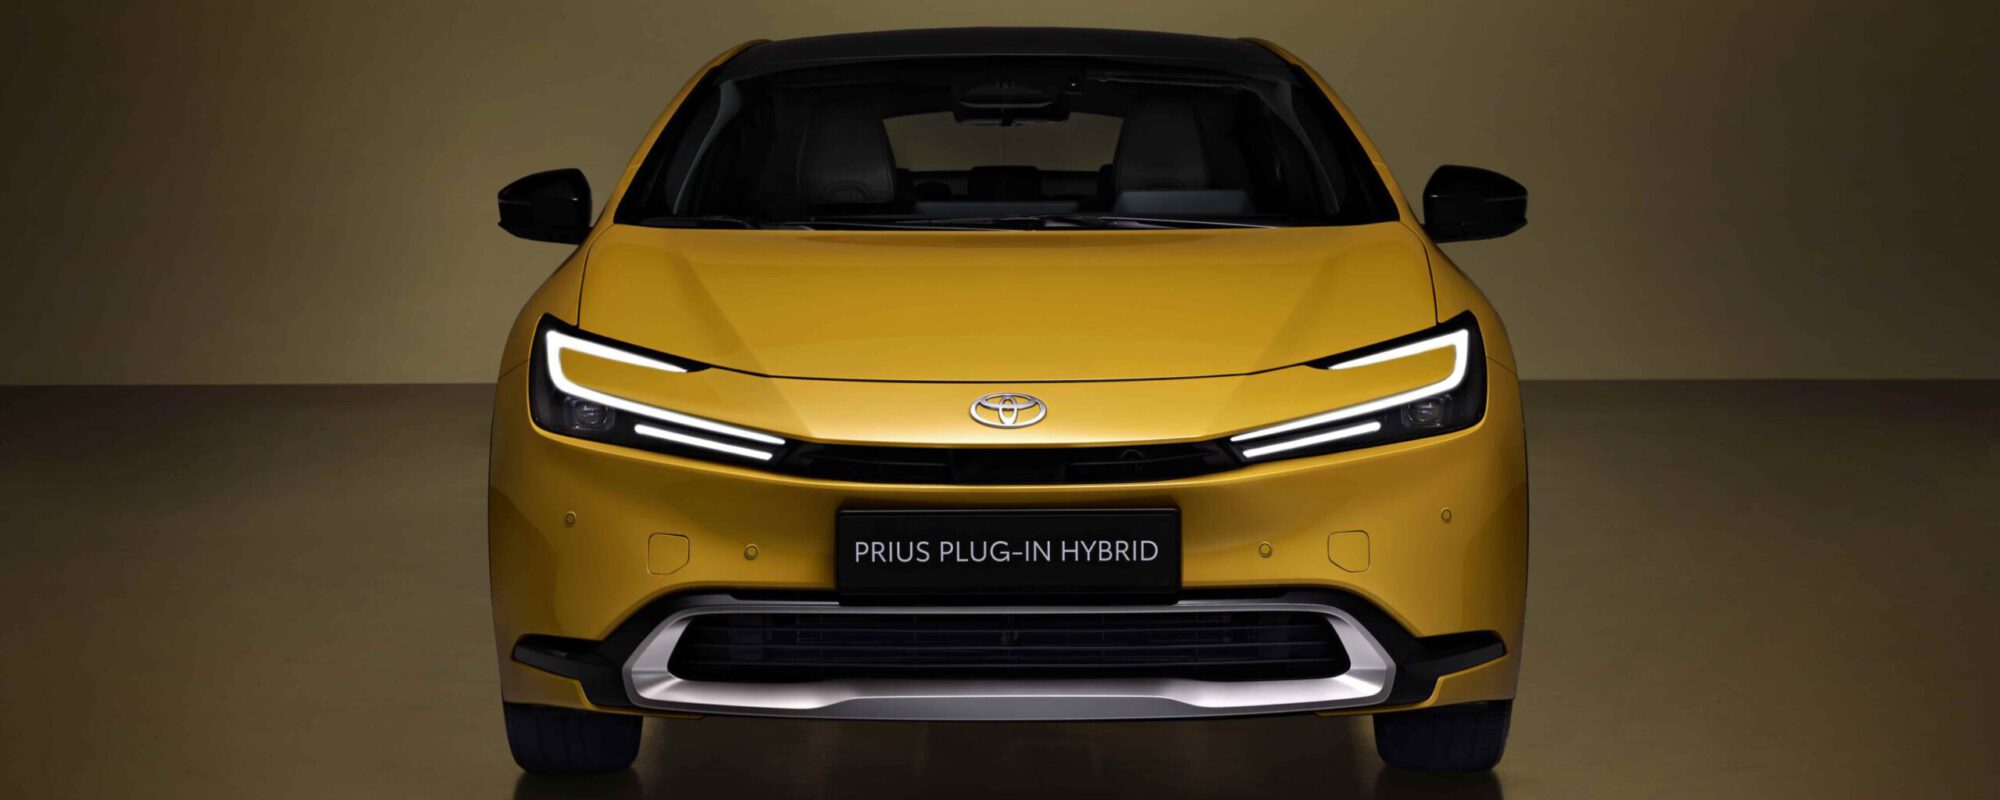 Toyota-start-met-voorverkoop-nieuwe-Prius-Plug-in-Hybrid-2000x800